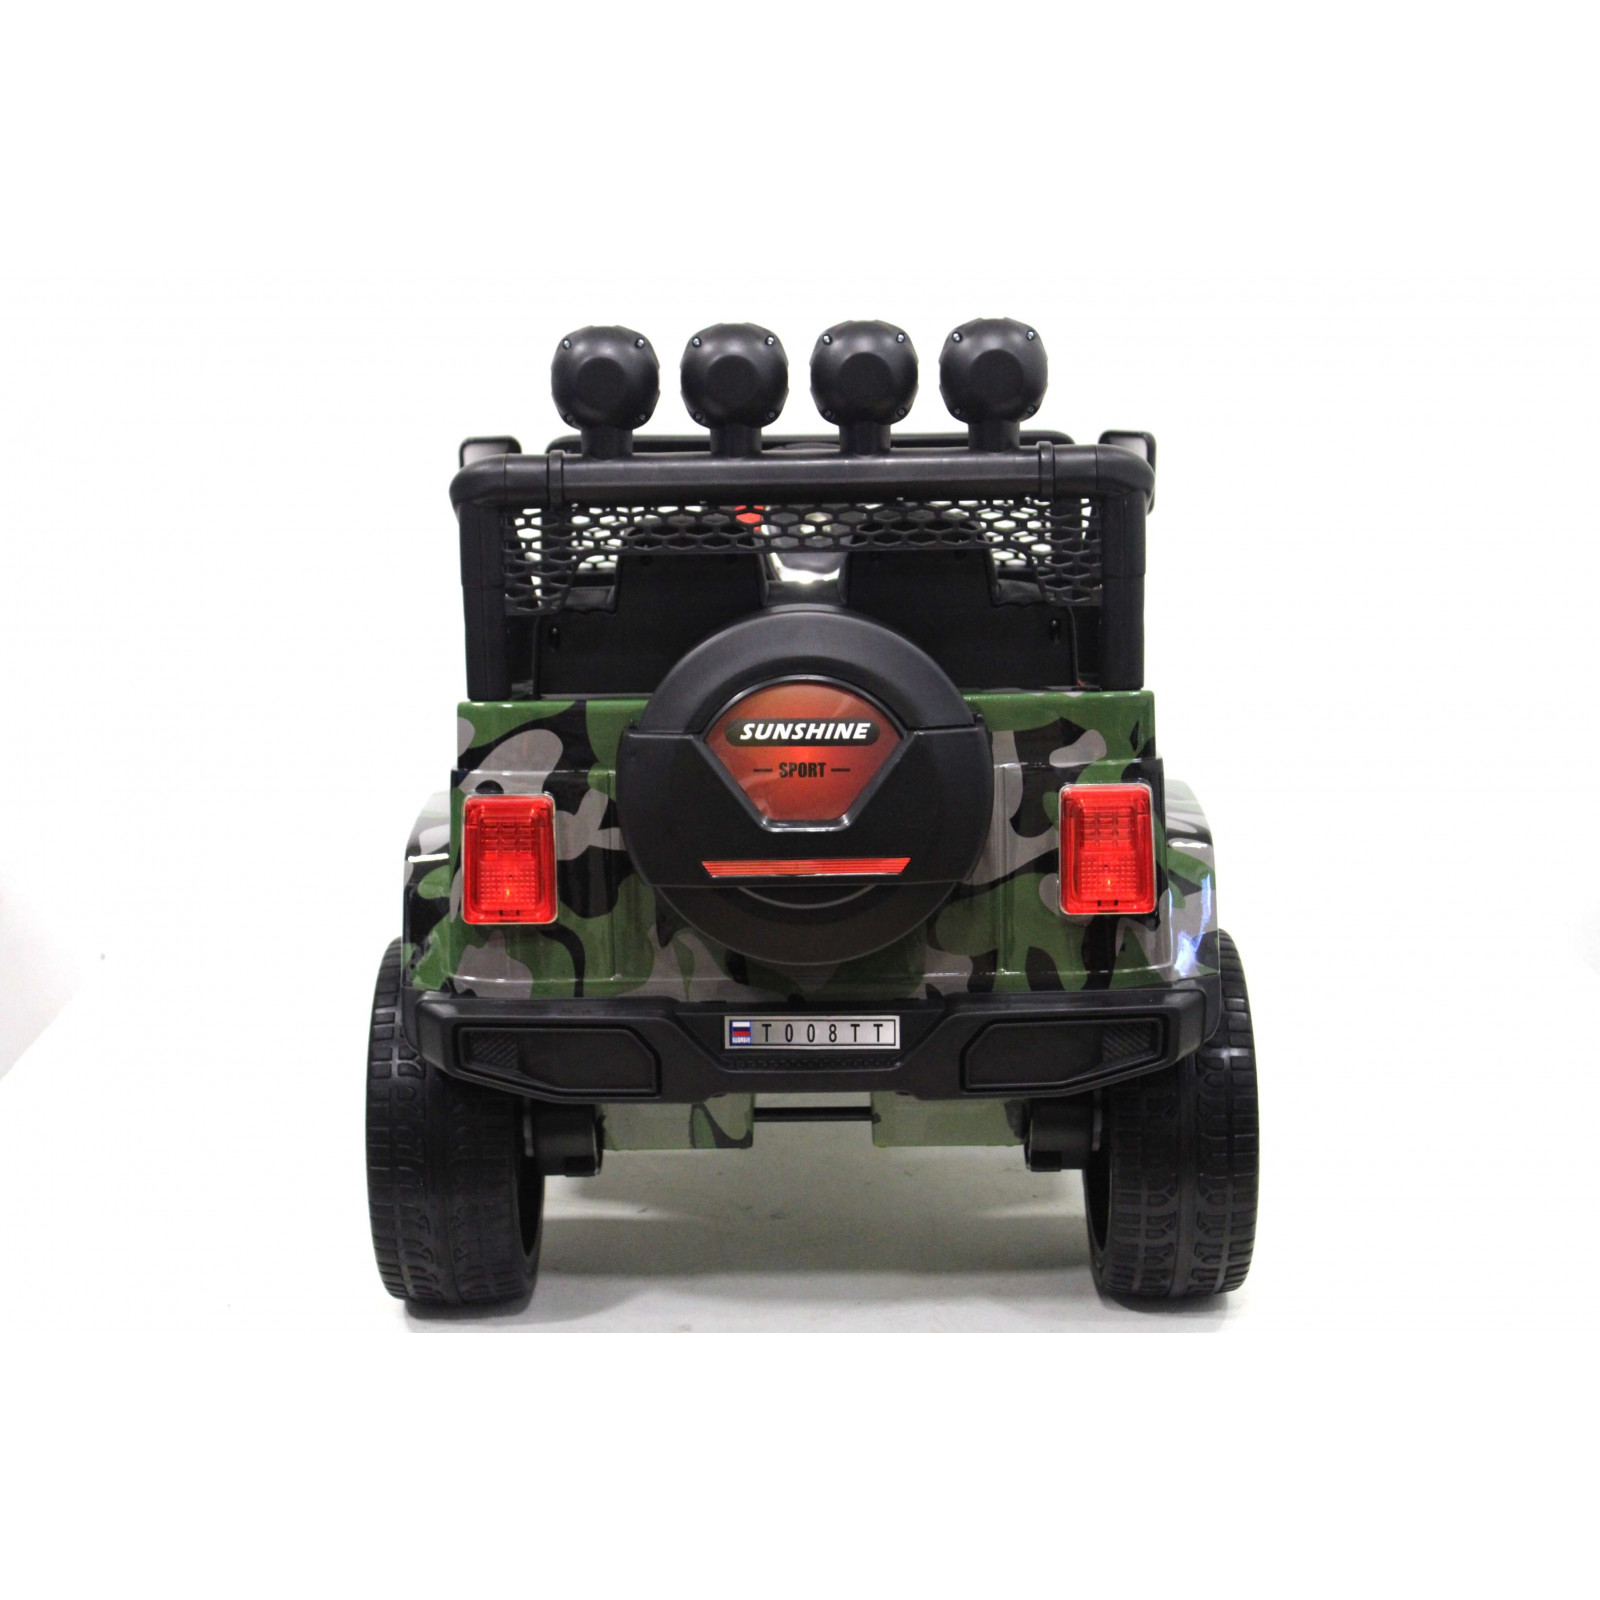 Детский электромобиль Jeep 4x4 (T008TT) 